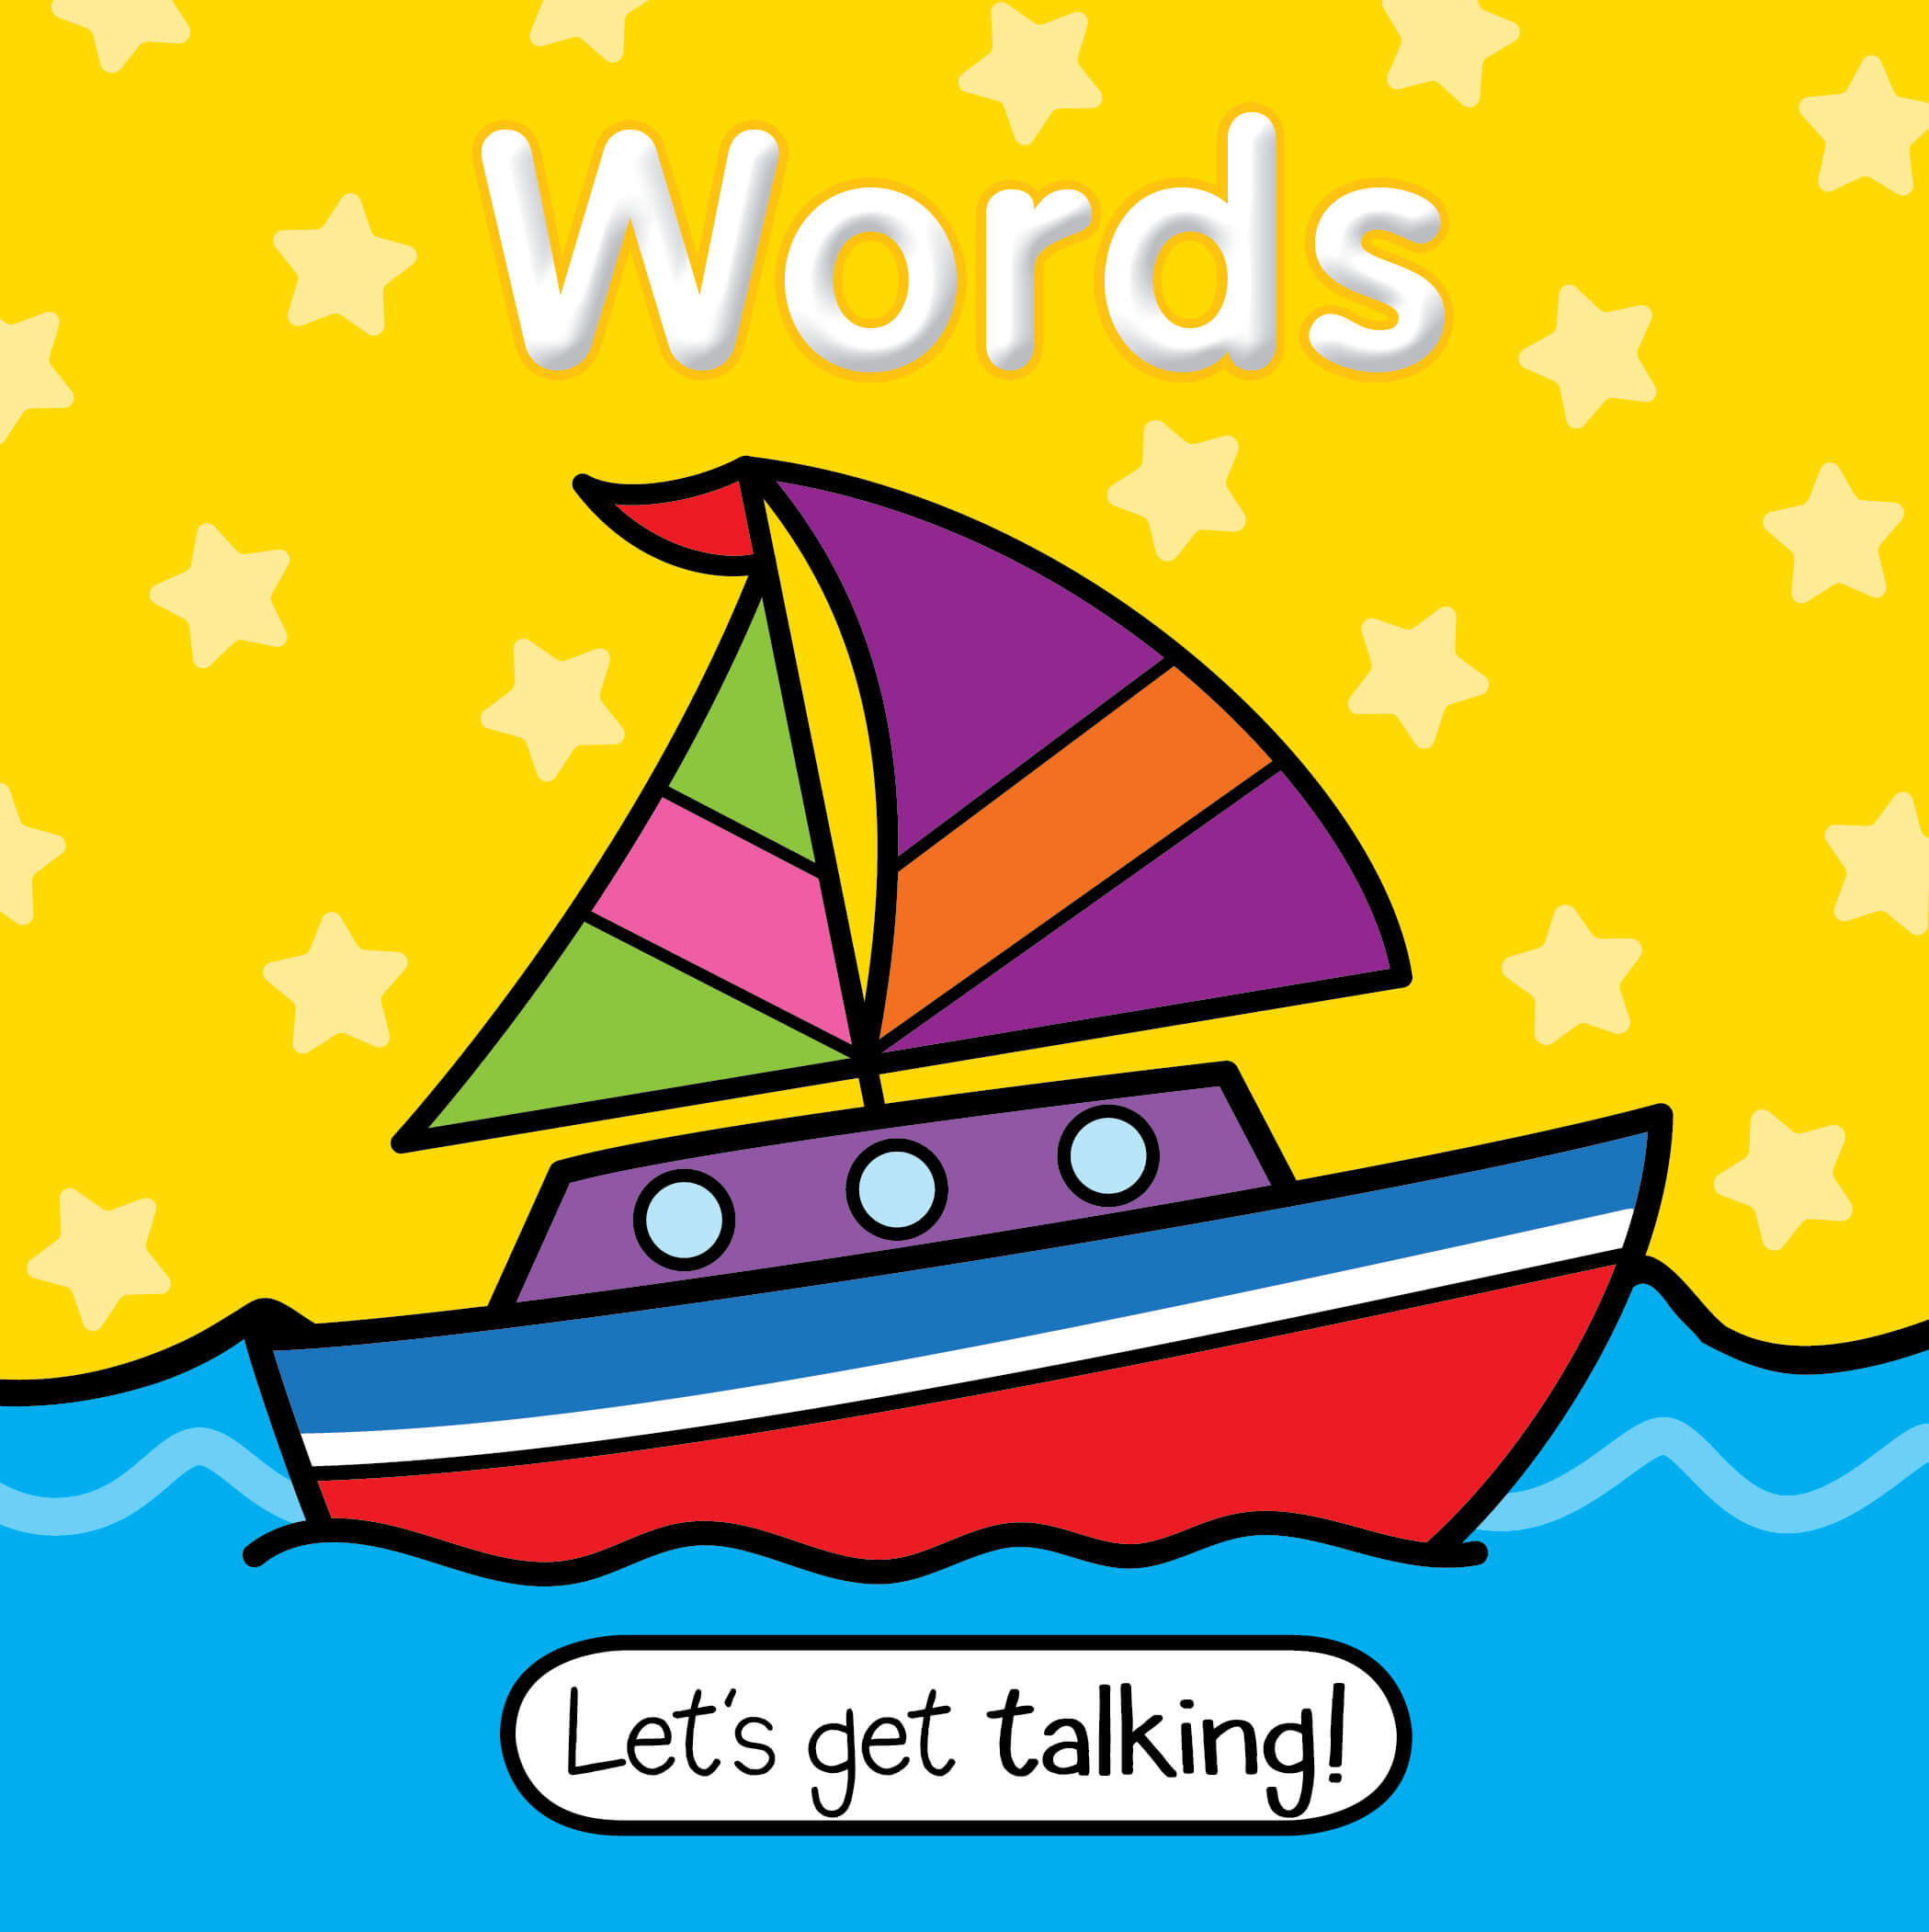 Let’s Get Talking! Words